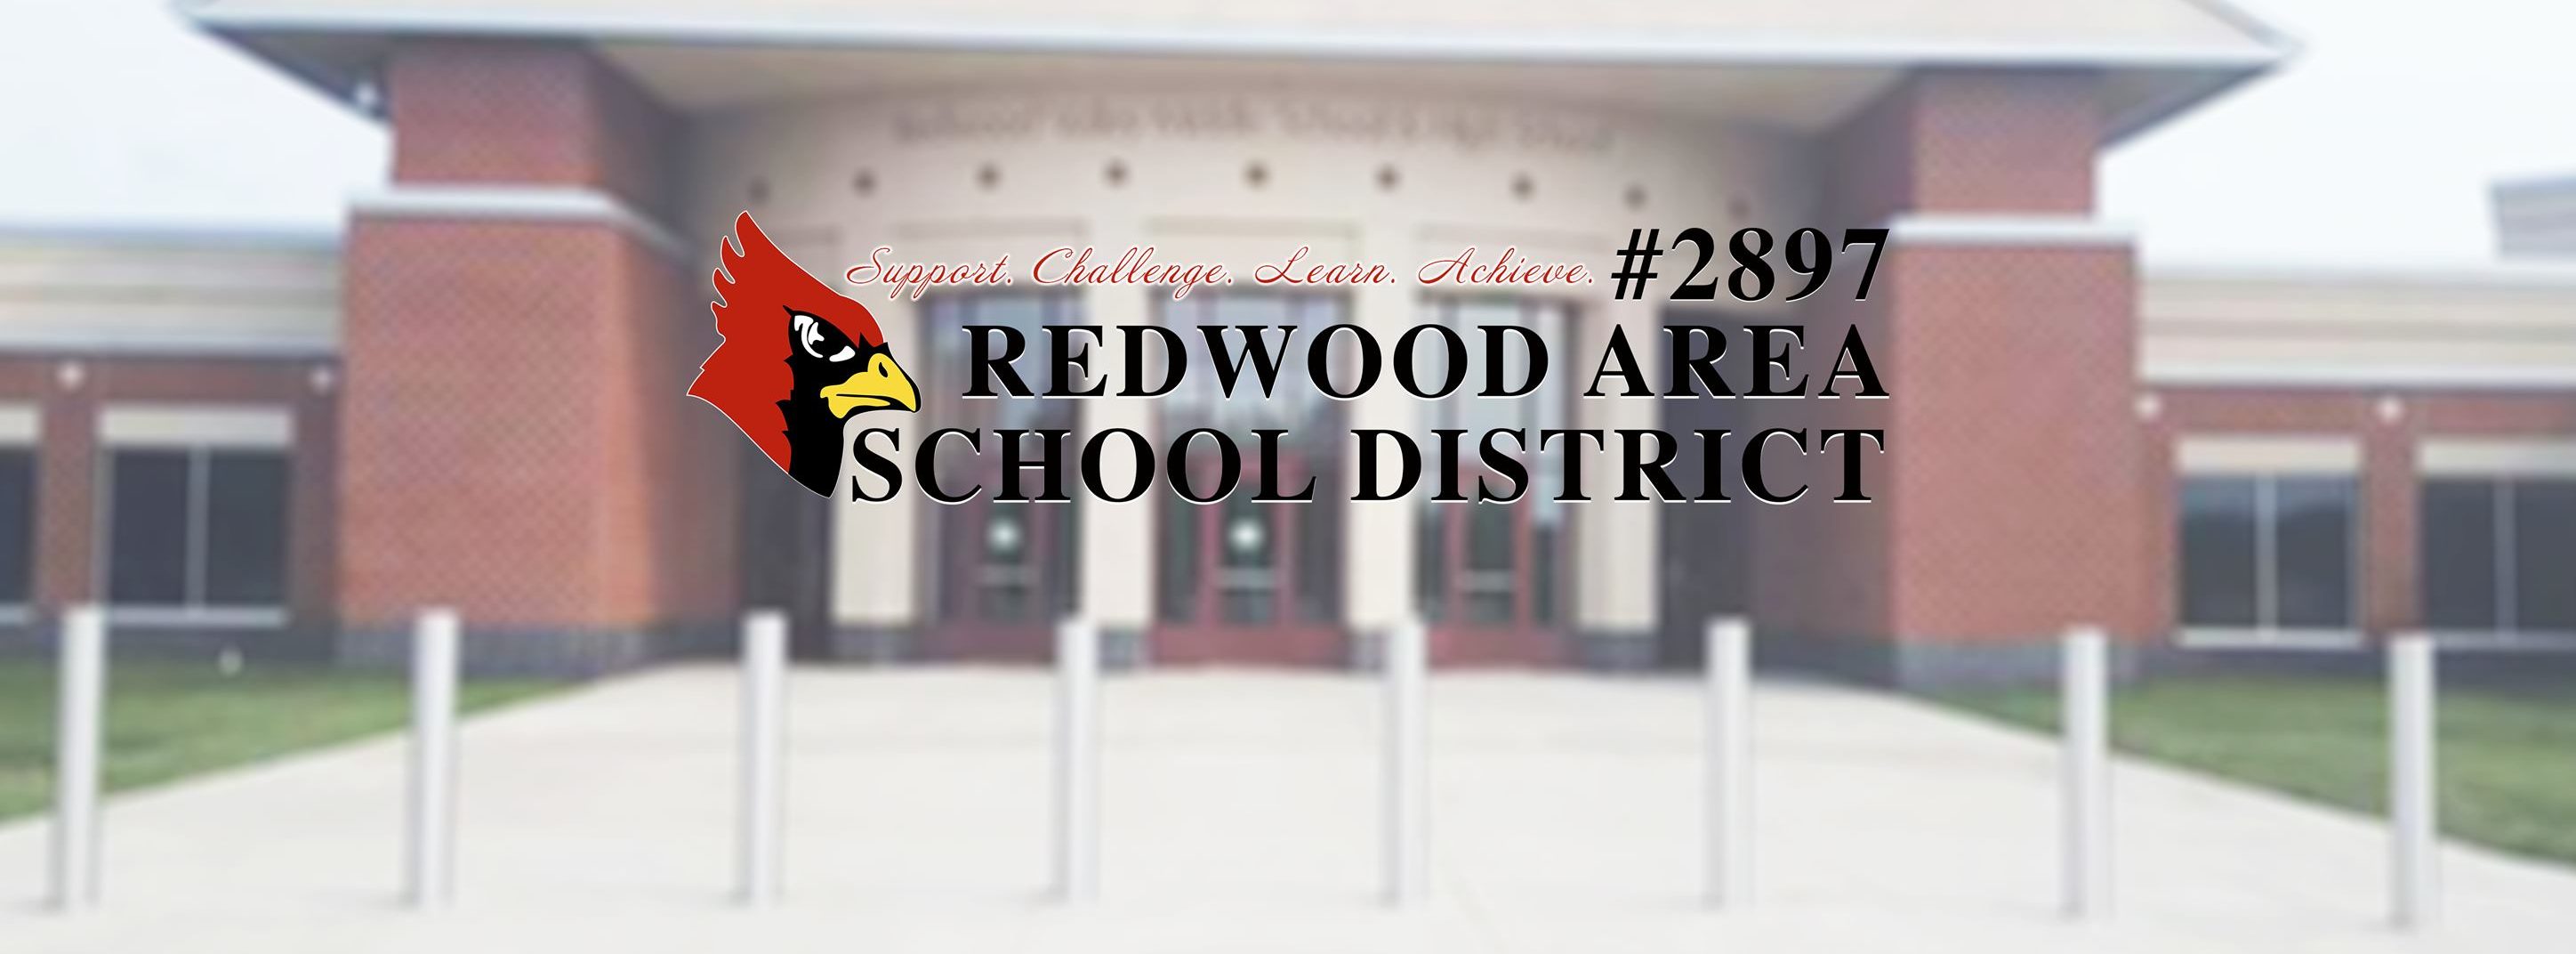 Redwood Area School District